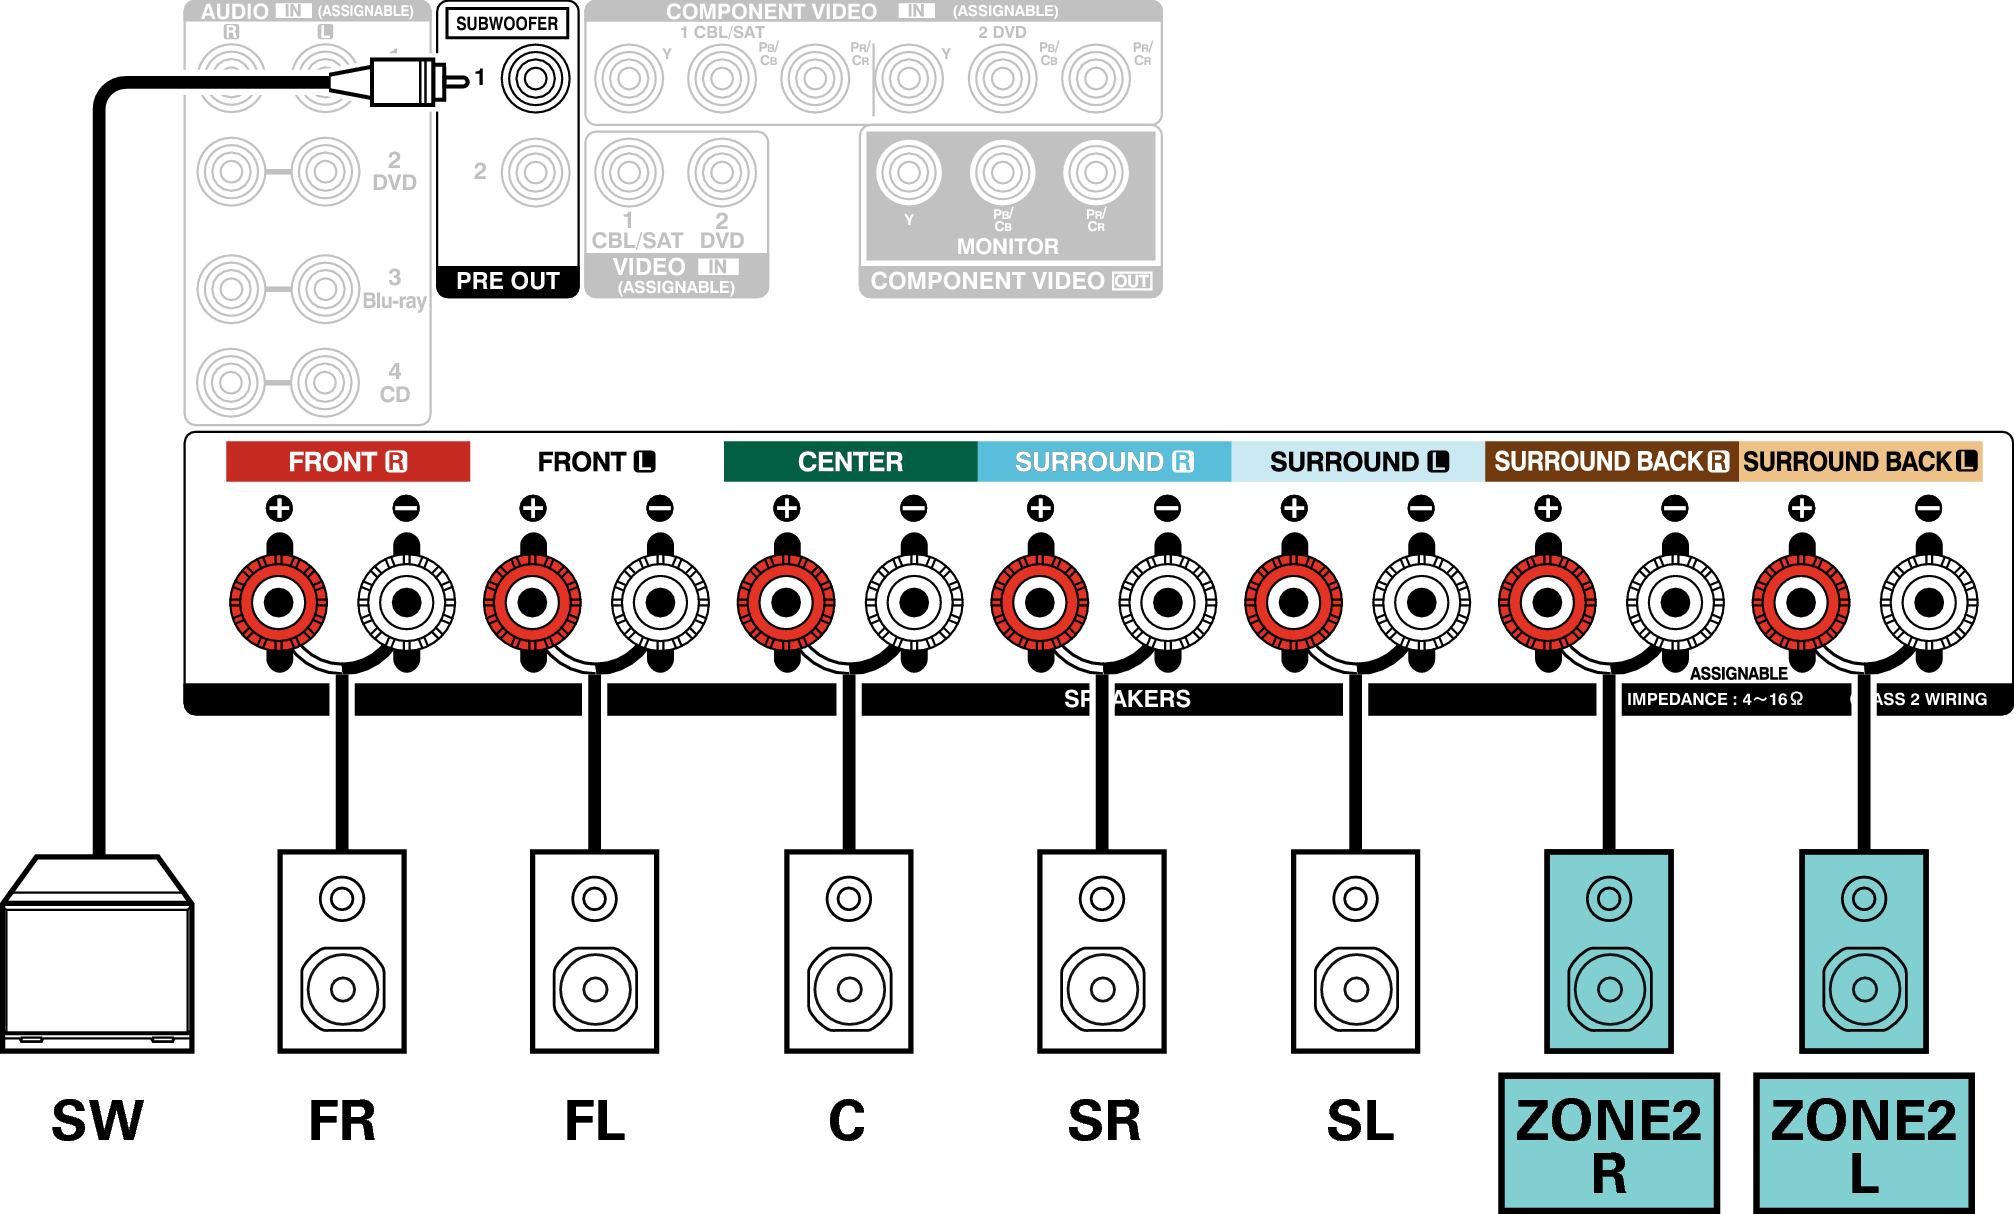 Conne SP 5.1 ZONE2 AVRS900W